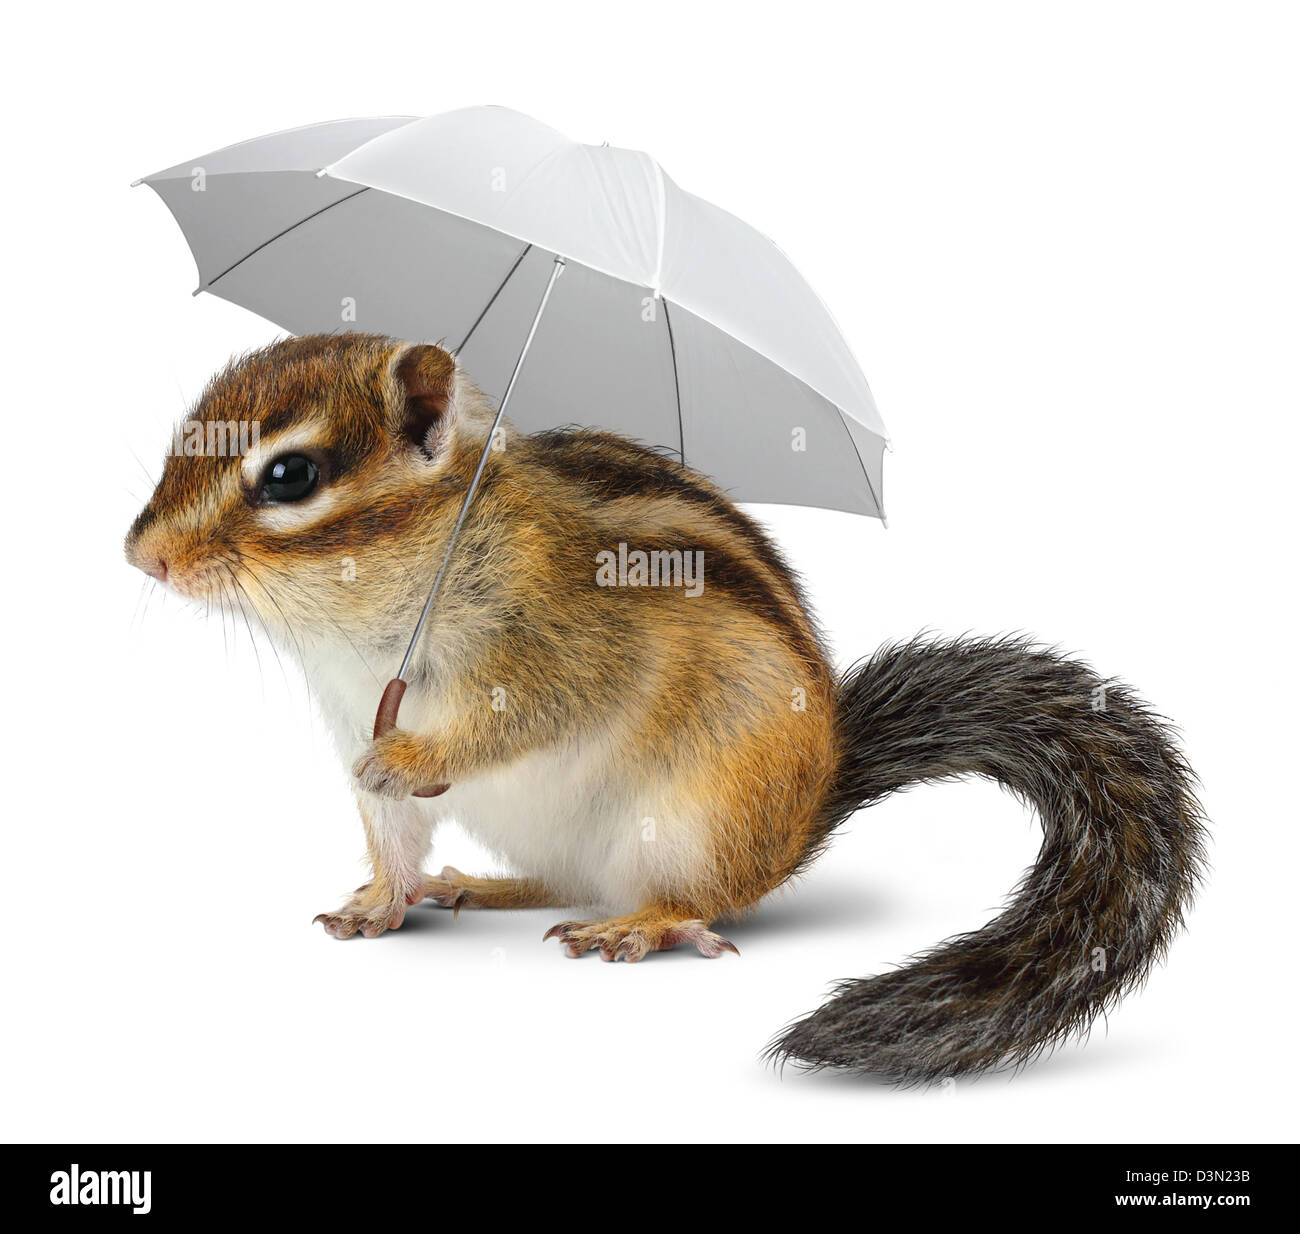 Tamia drôle avec parapluie sur blanc, concept météo Banque D'Images